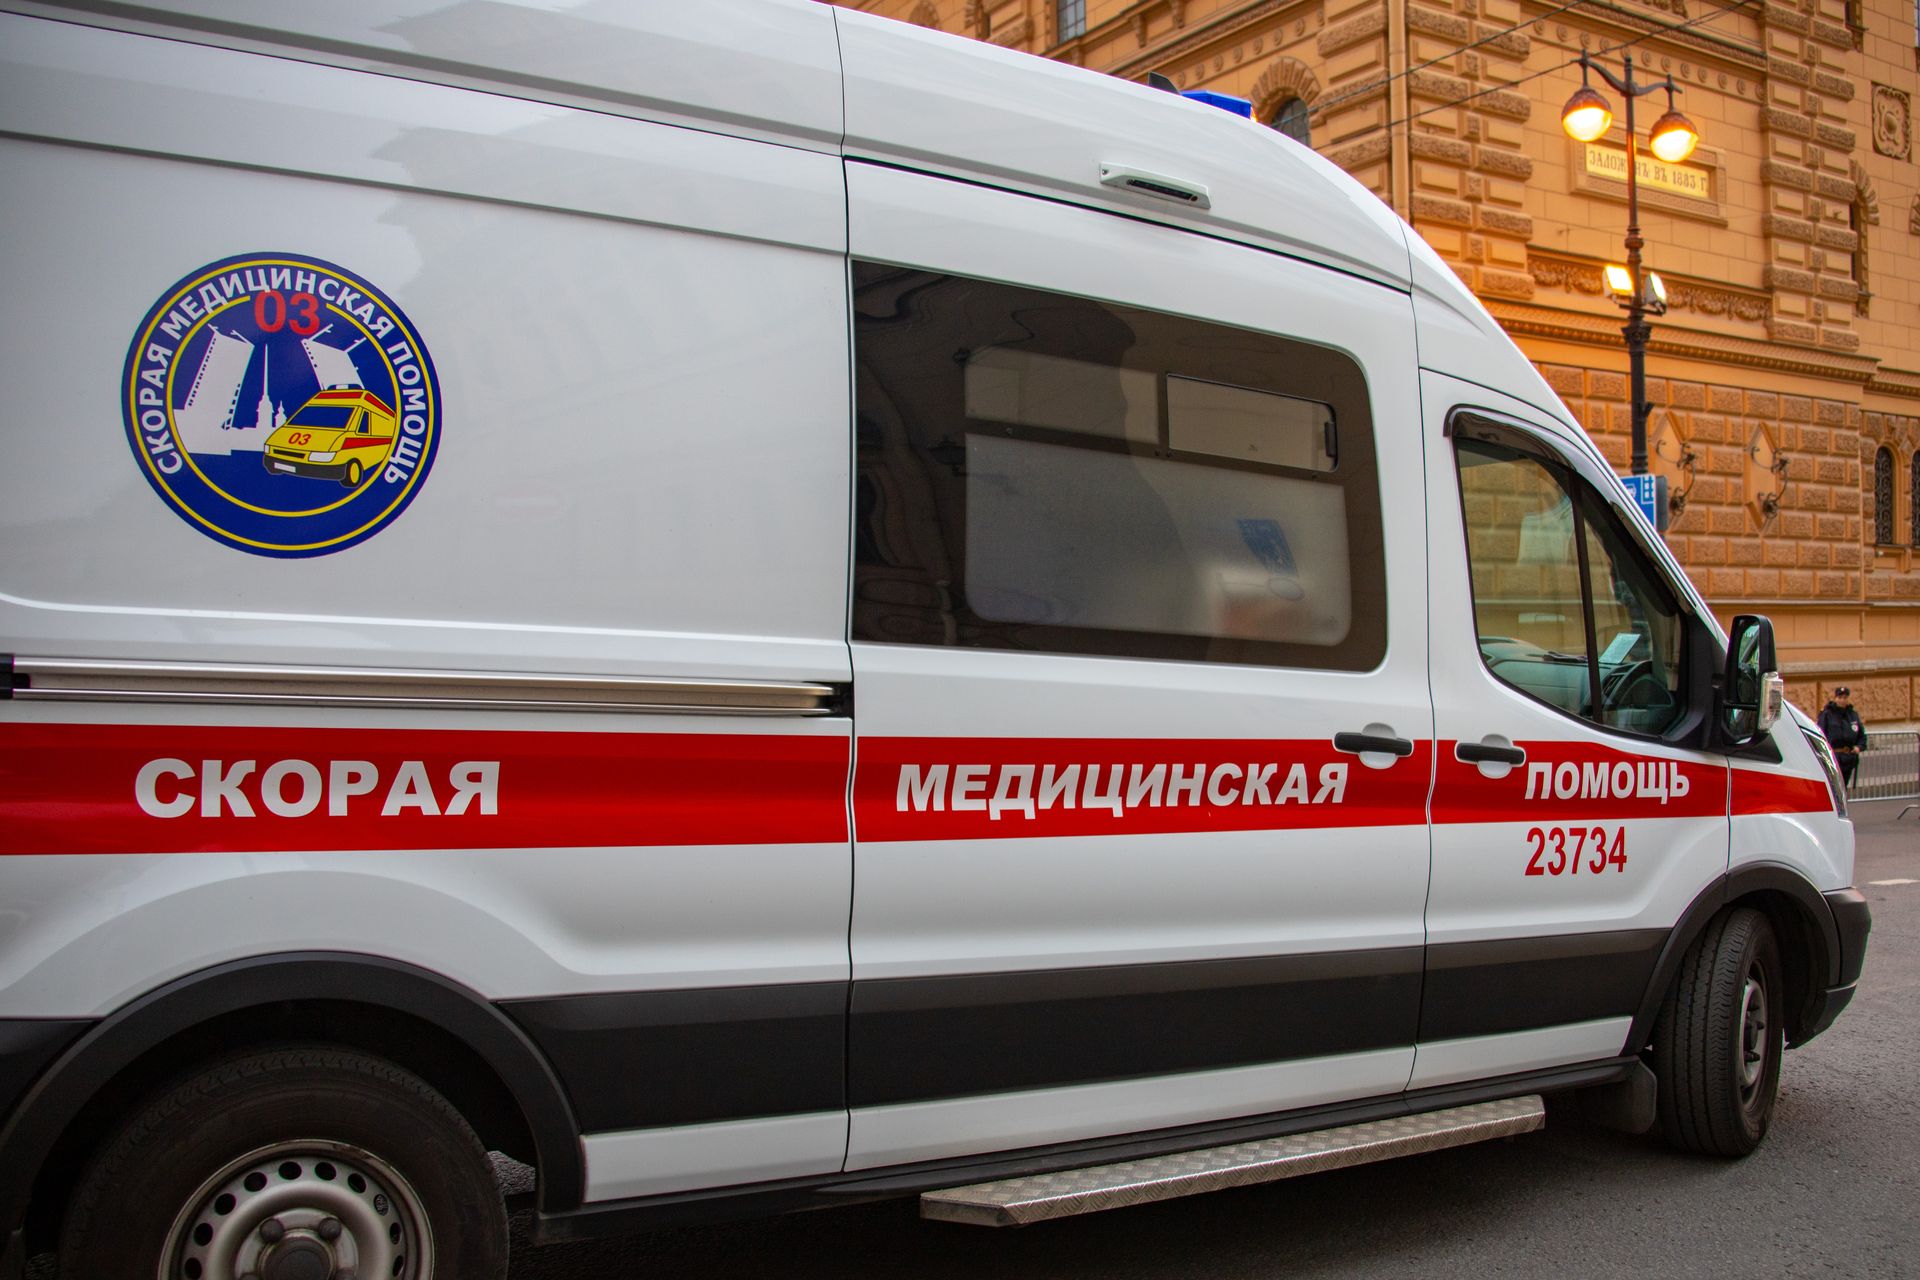 Пешеход попал под колеса автомобиля в центре Петербурга Происшествия